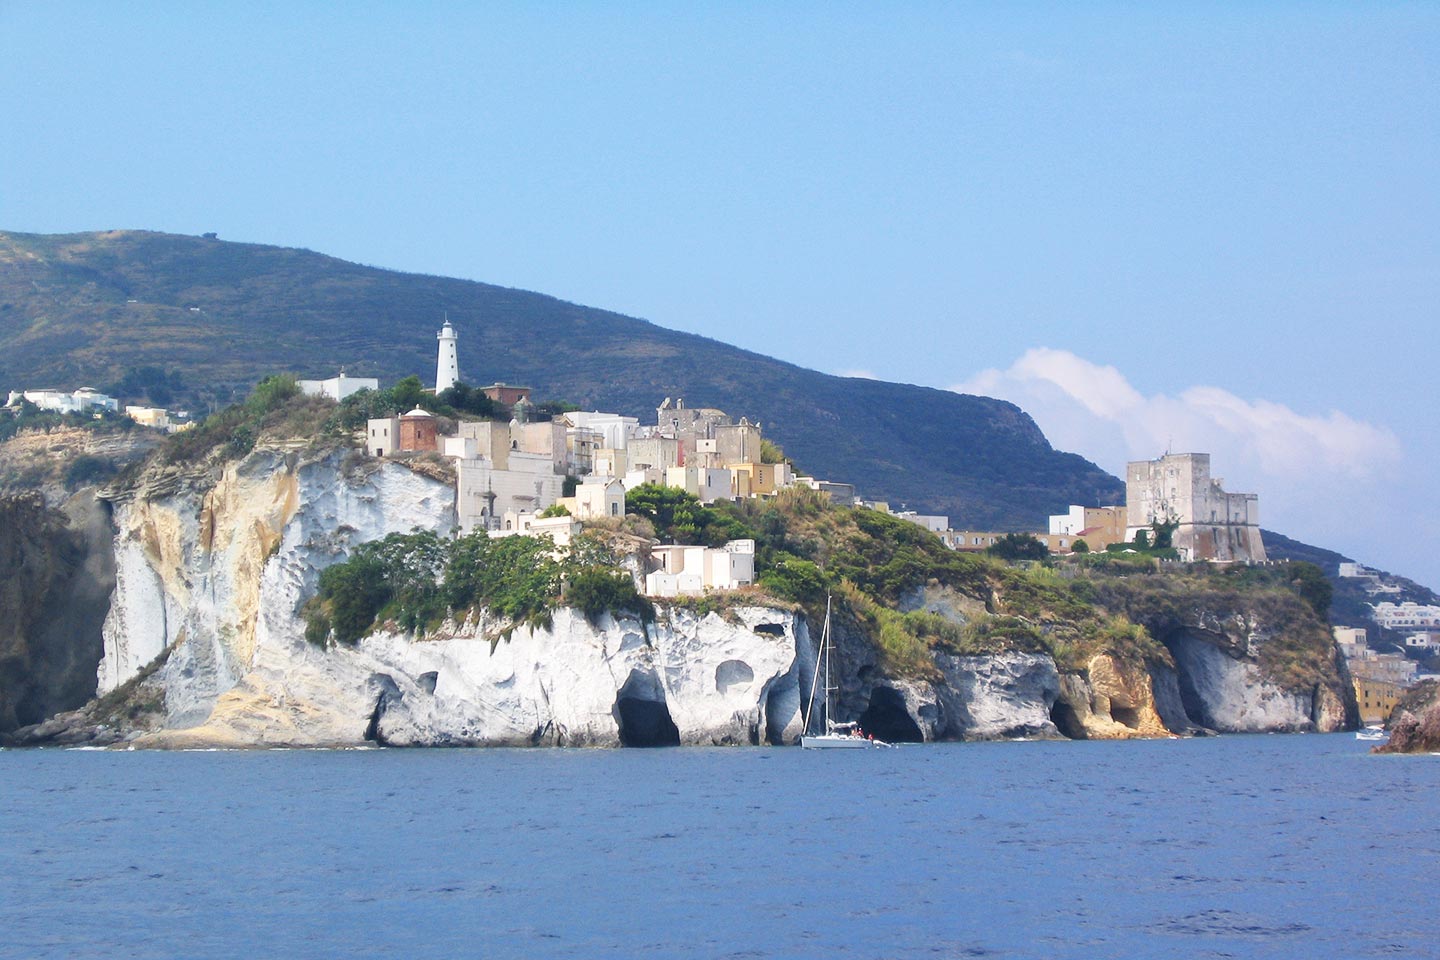 Landzunge der Madonna - Insel Ponza